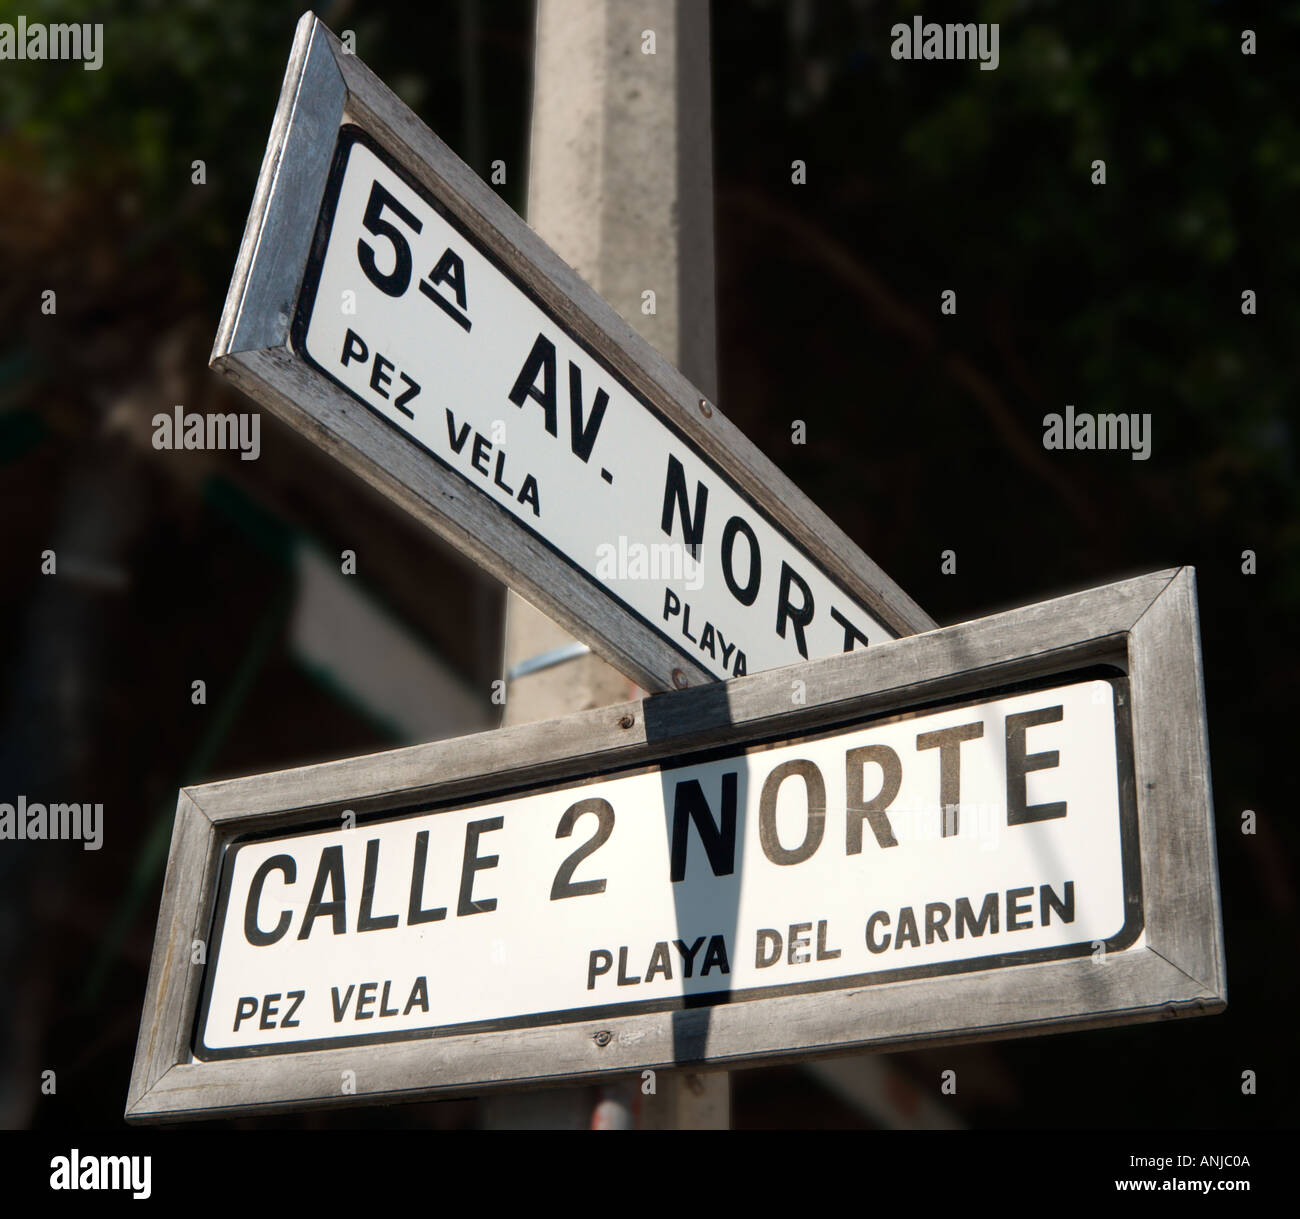 Signo de la Calle 5th Avenue, Playa del Carmen, Riviera Maya, la Península de Yucatán, México Foto de stock